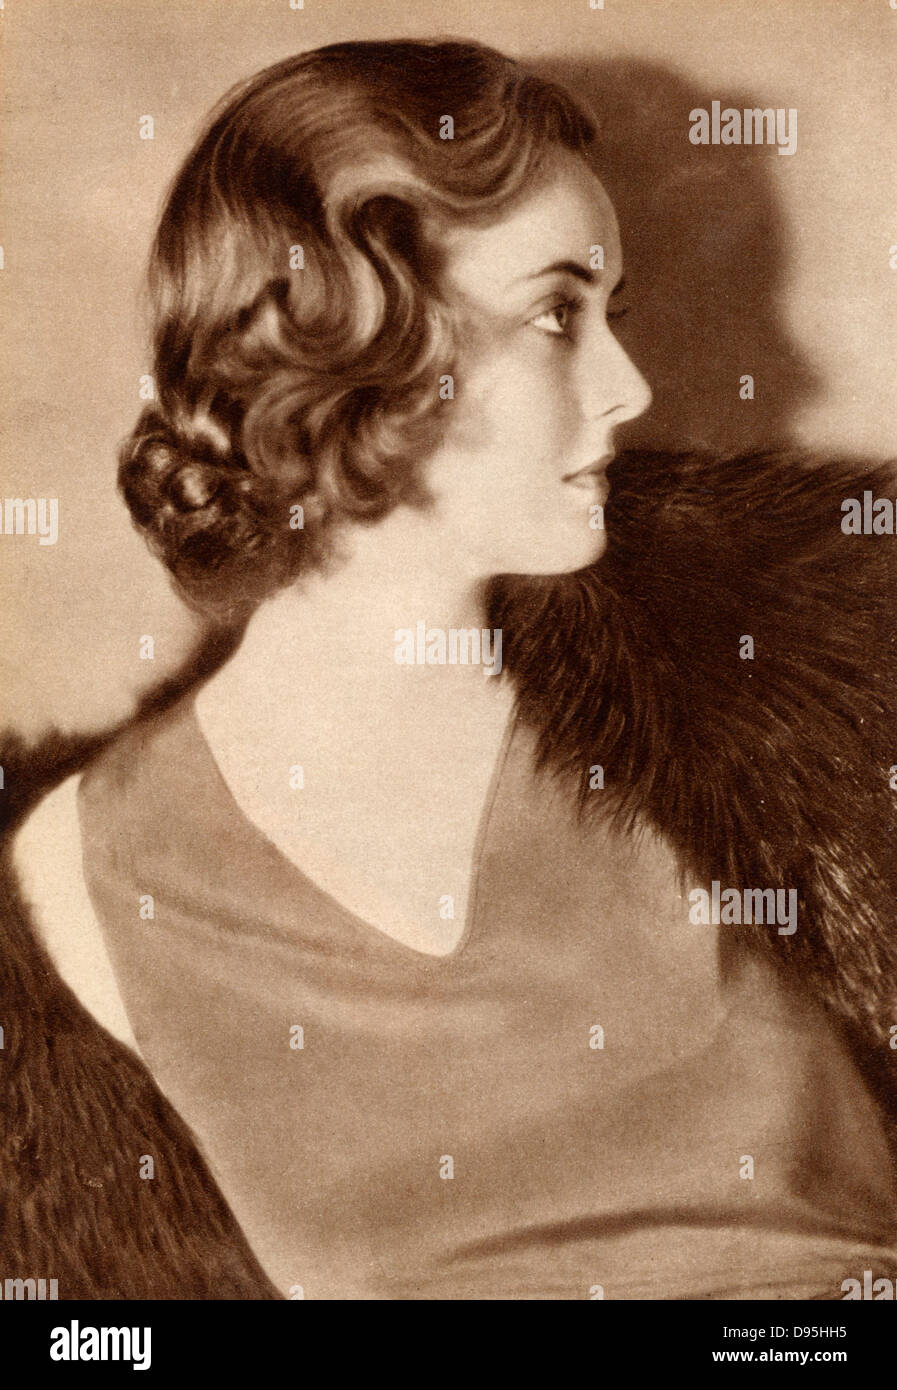 Bette Davis (1908-1989) American Hollywood attrice e star del cinema, come una giovane donna. Fotografia. Mezzitoni Foto Stock